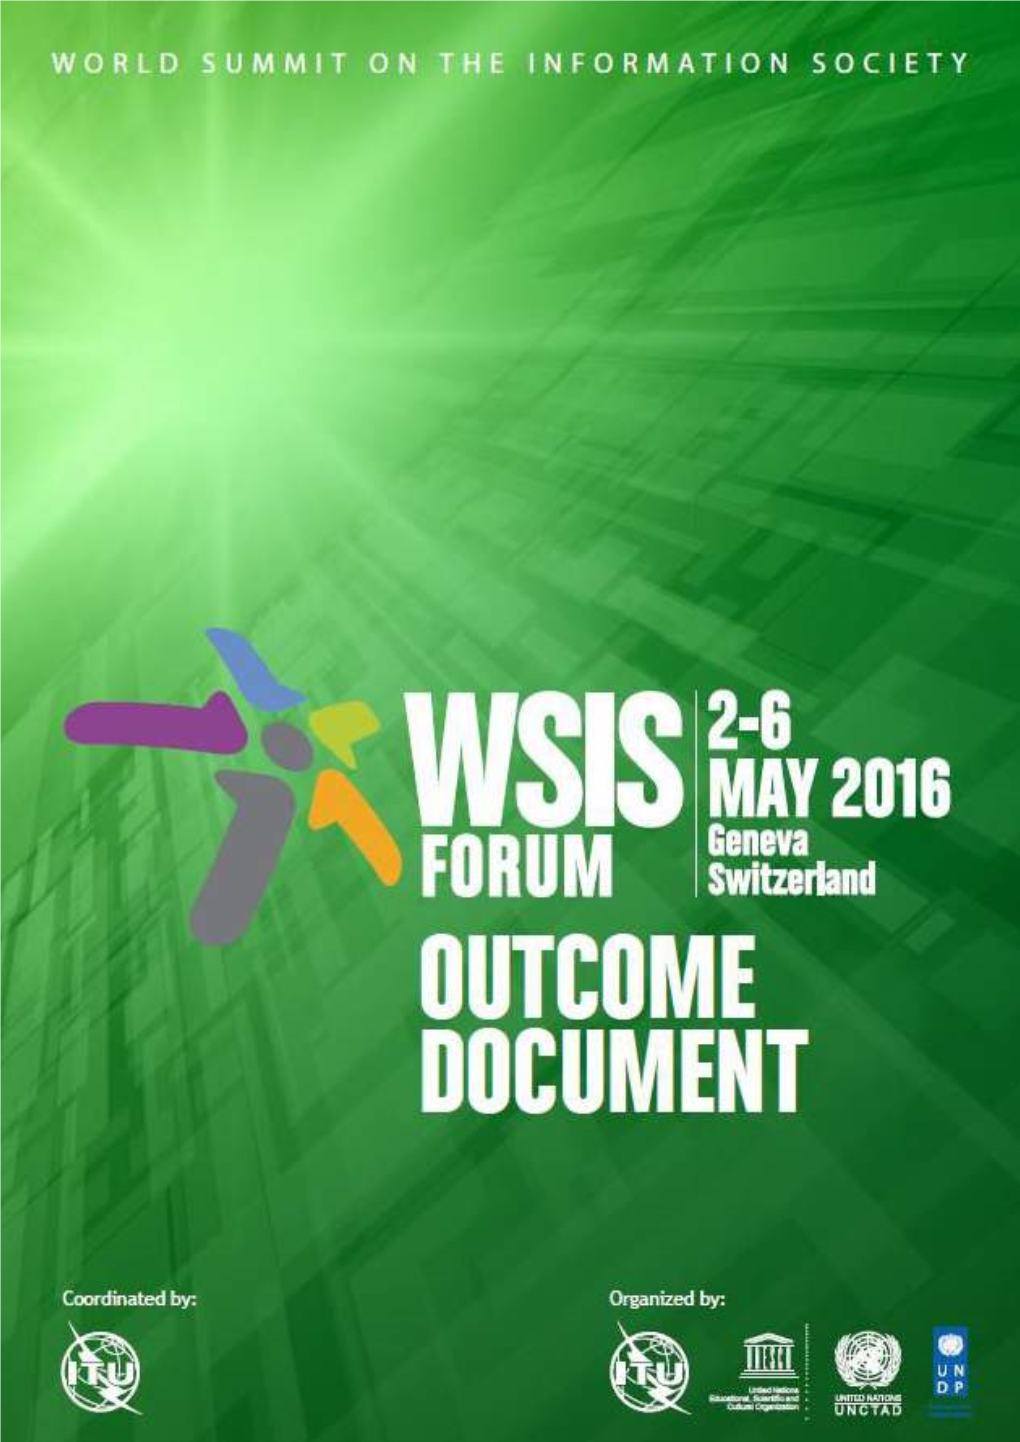 WSIS Forum 2016 Reception Sponsored by Switzerland